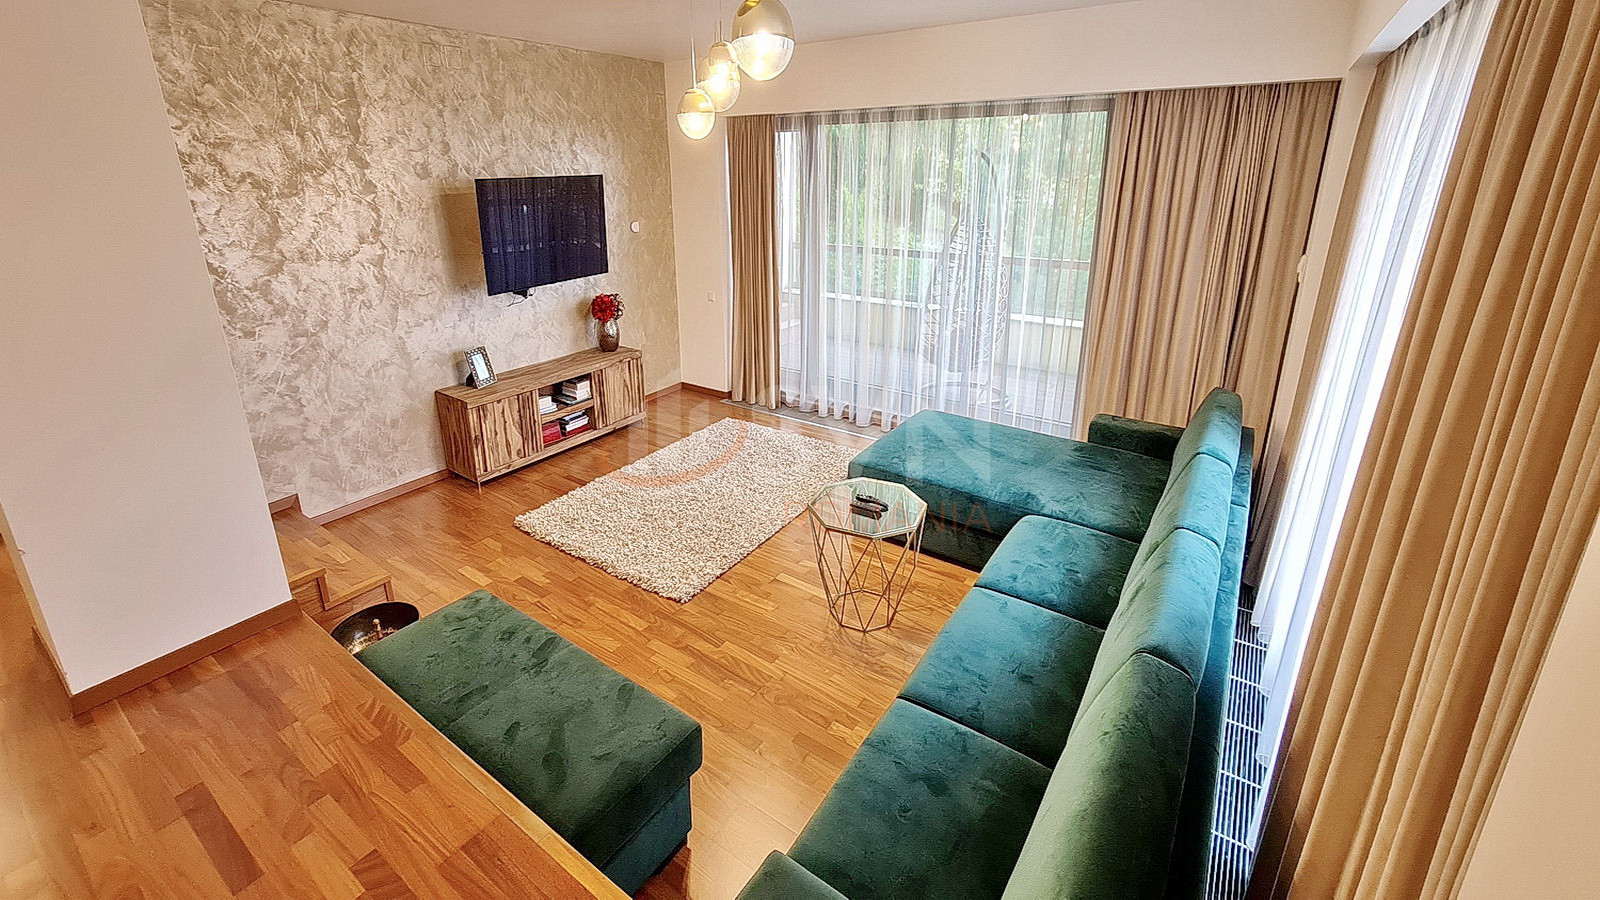 Apartament, 4 camere Brasov/Drumul Poienii